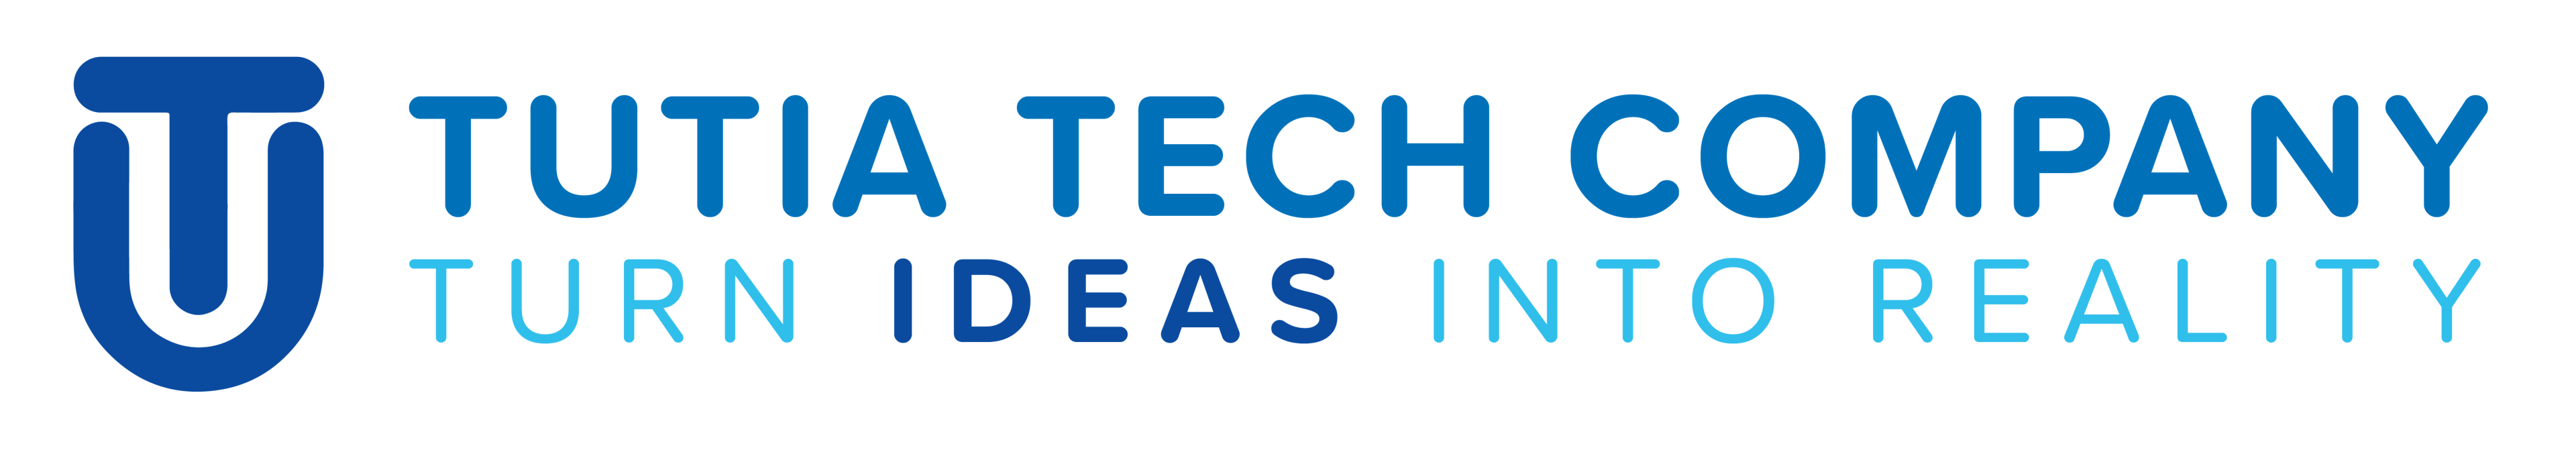 Tutia Tech logo